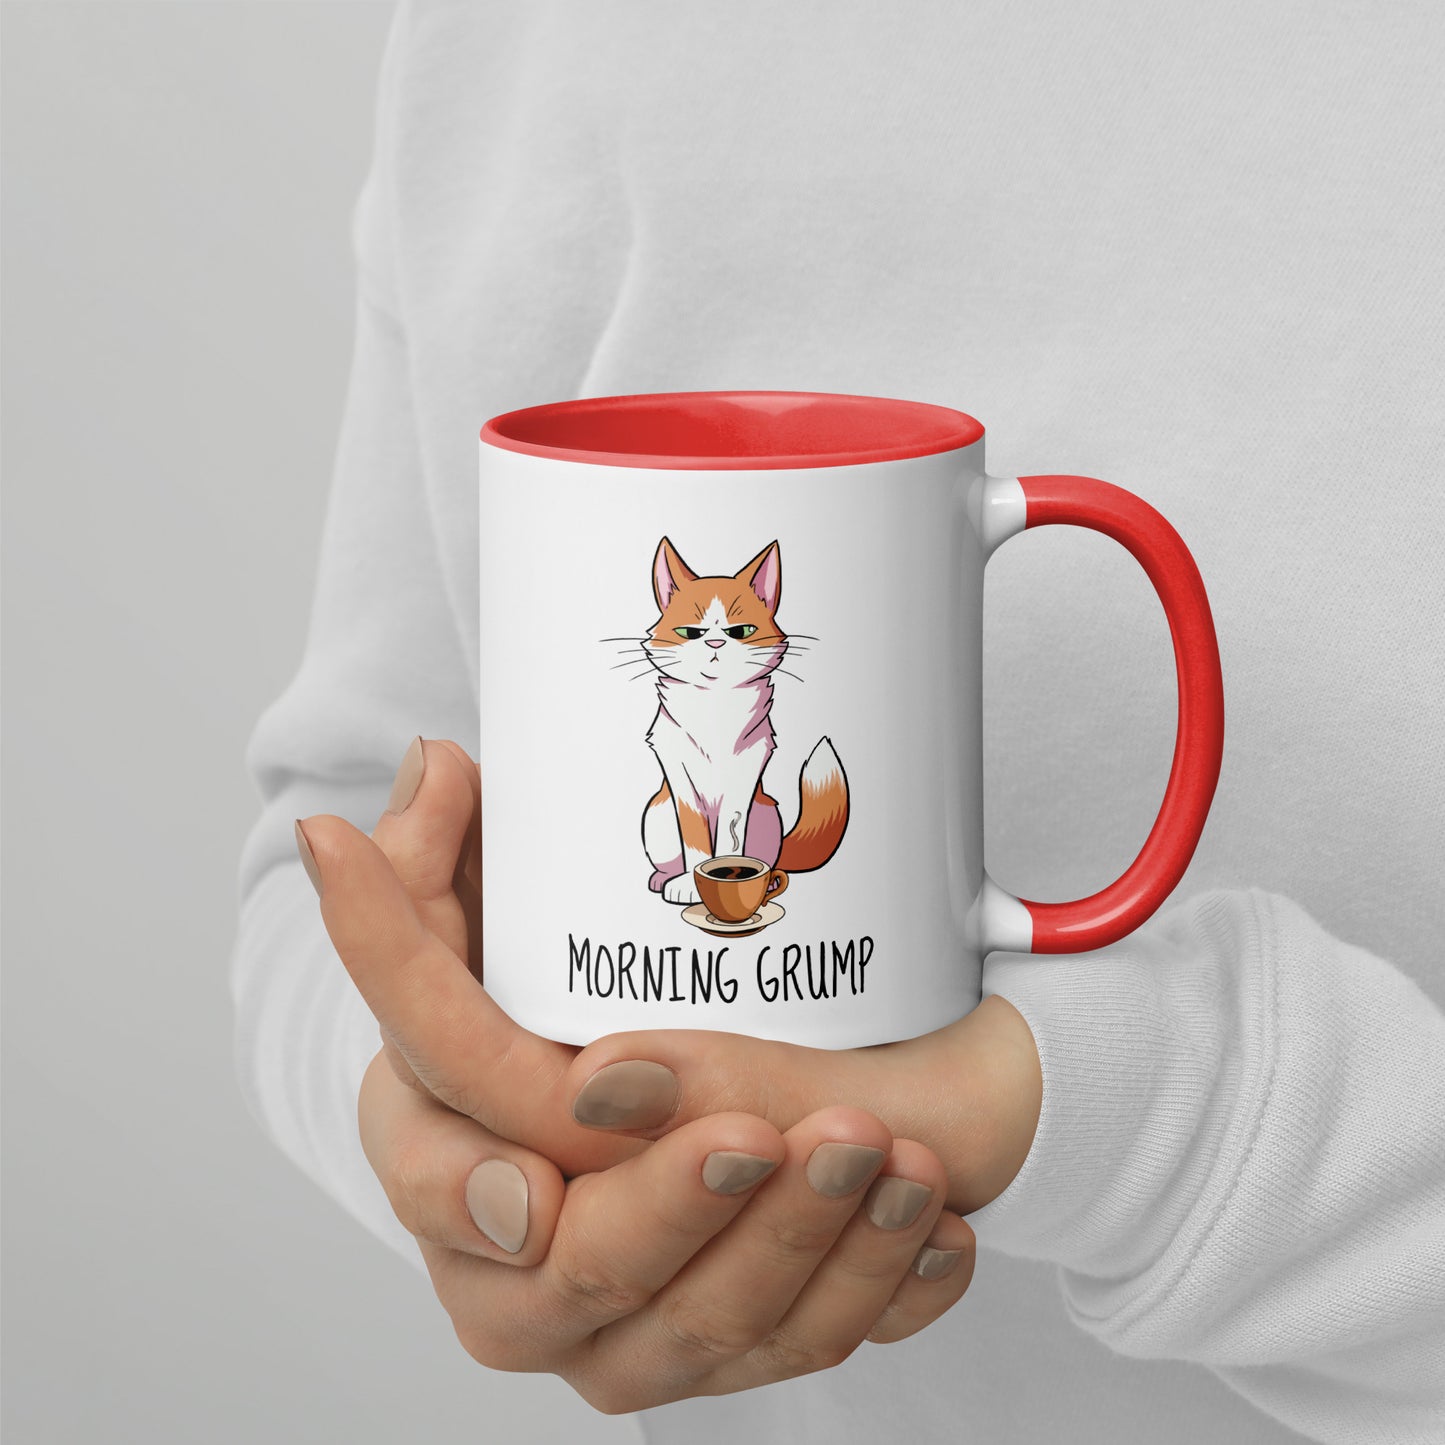 Morning Grump Coffee Cup!